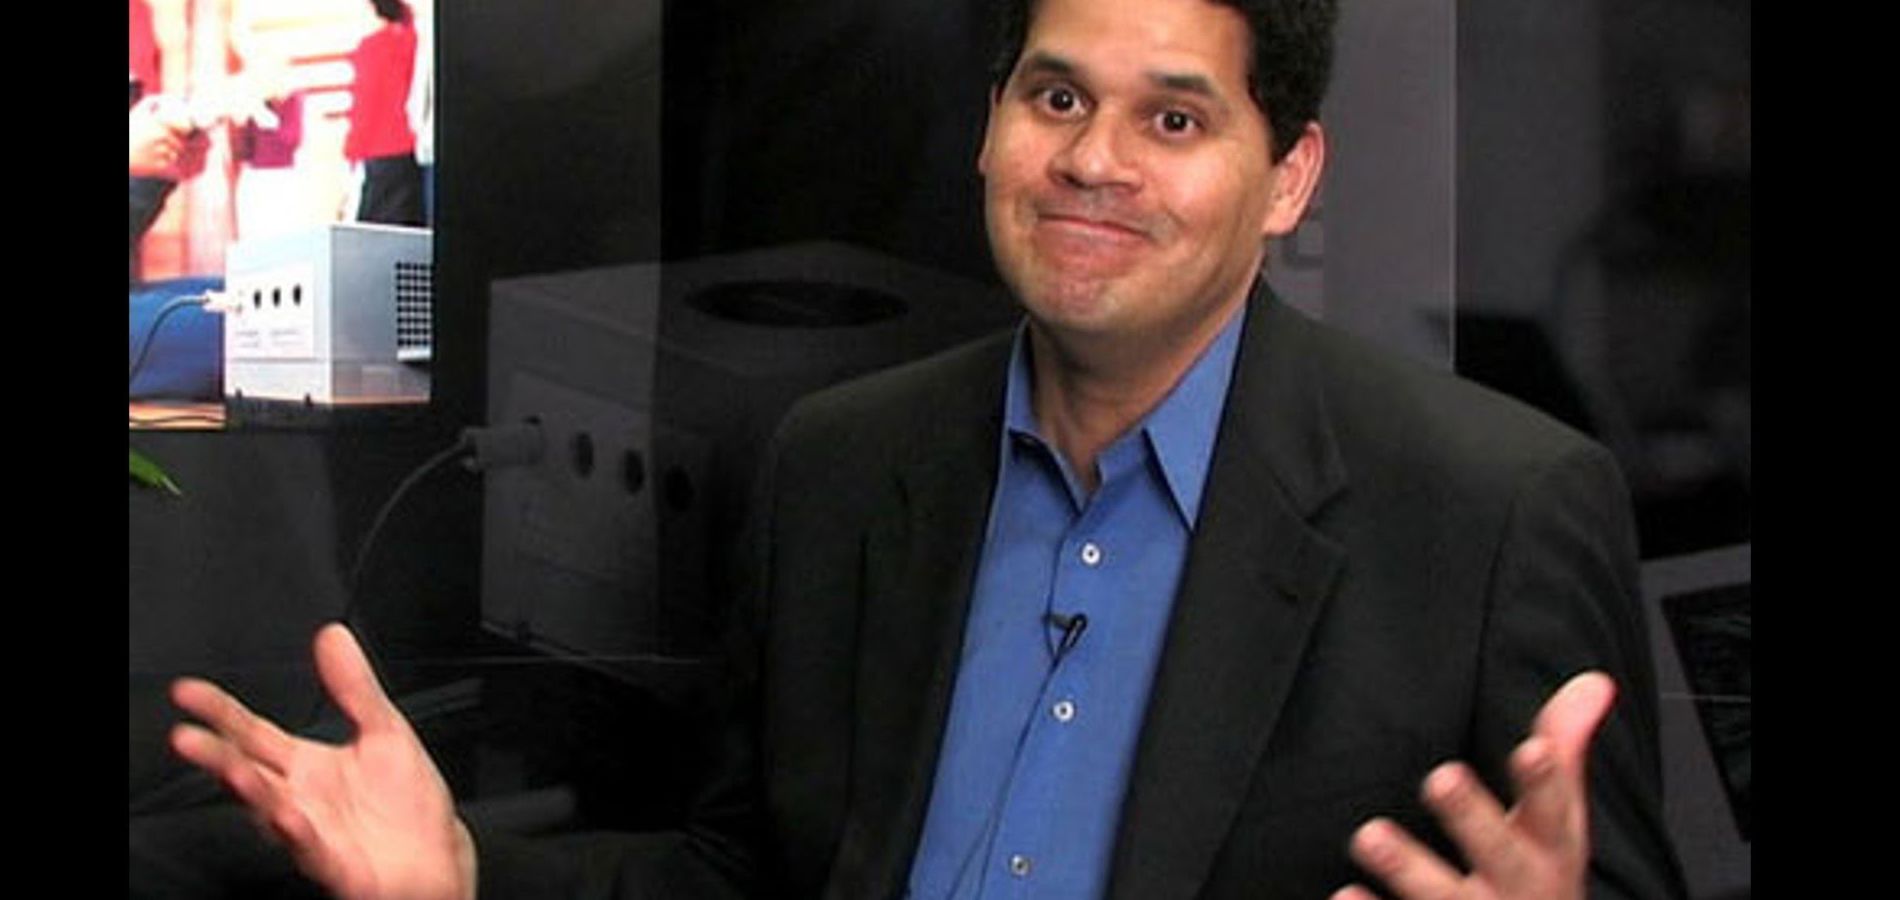 Reggie Nintendo Shrugging